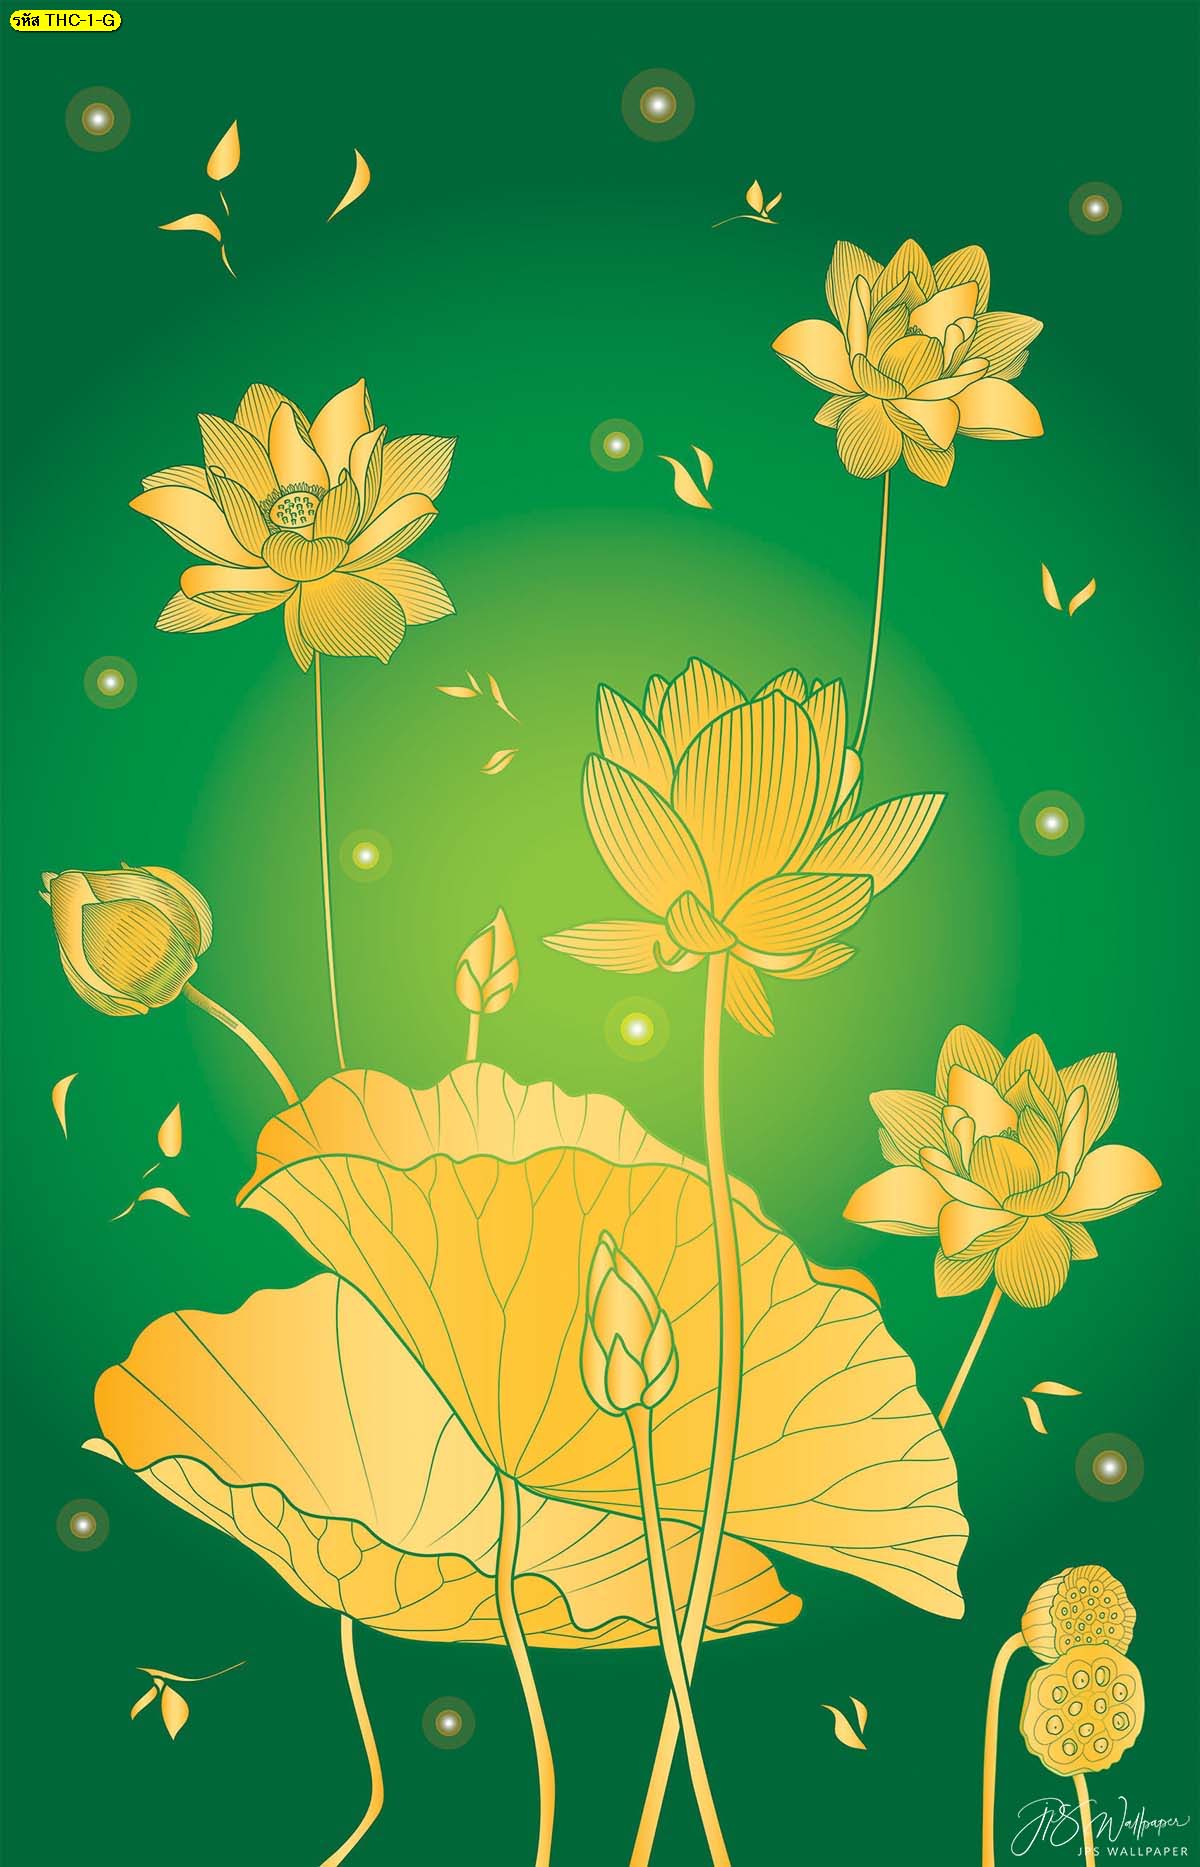 วอลเปเปอร์ลายดอกบัวทองพื้นสีเขียว รูปดอกบัวบาน ฉากหลังห้องพระสวยๆ